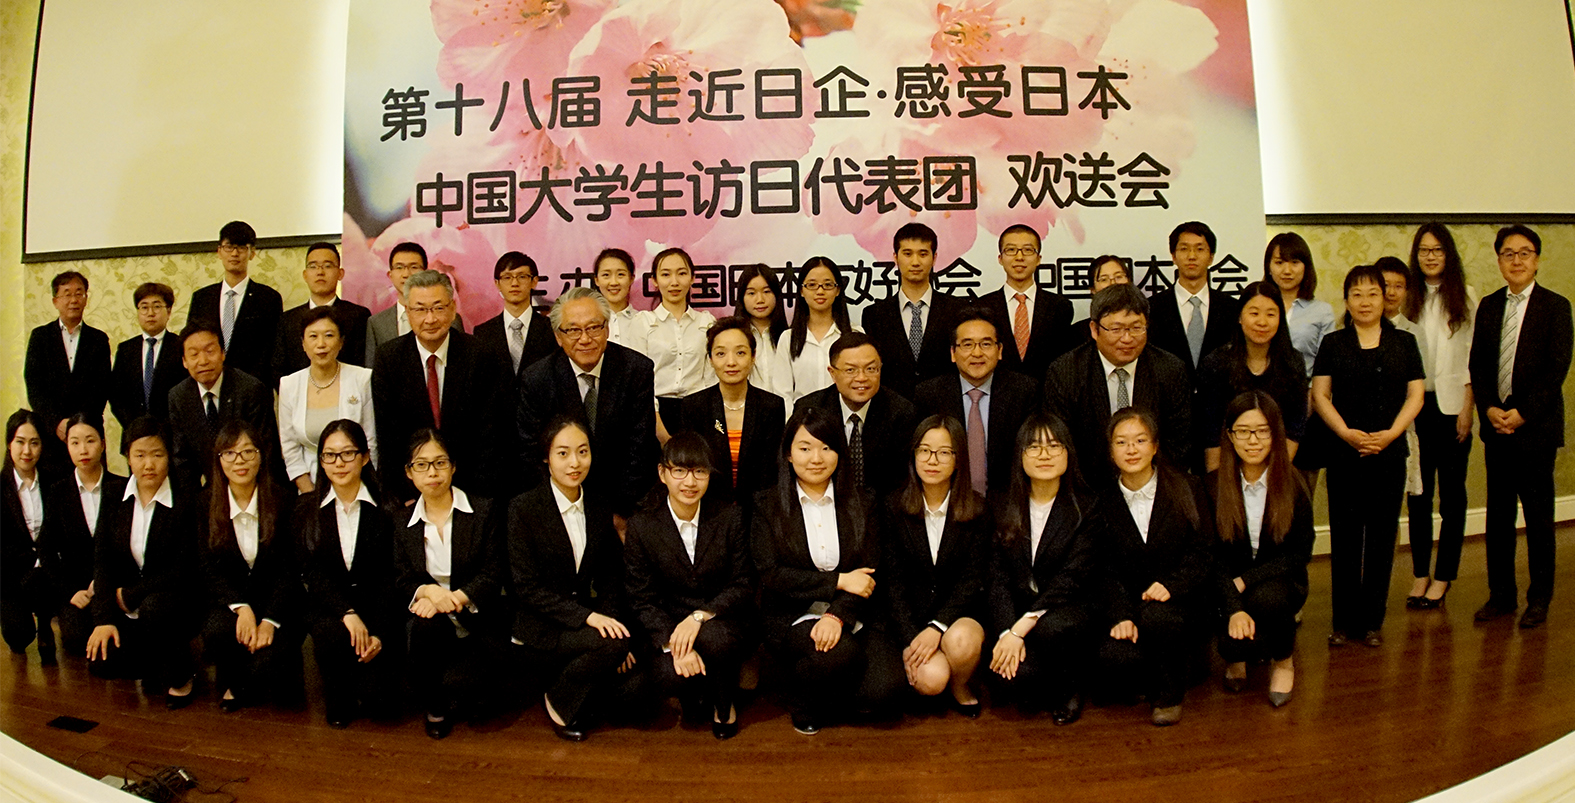 中国大学生代表团抵达日本展开友好交流